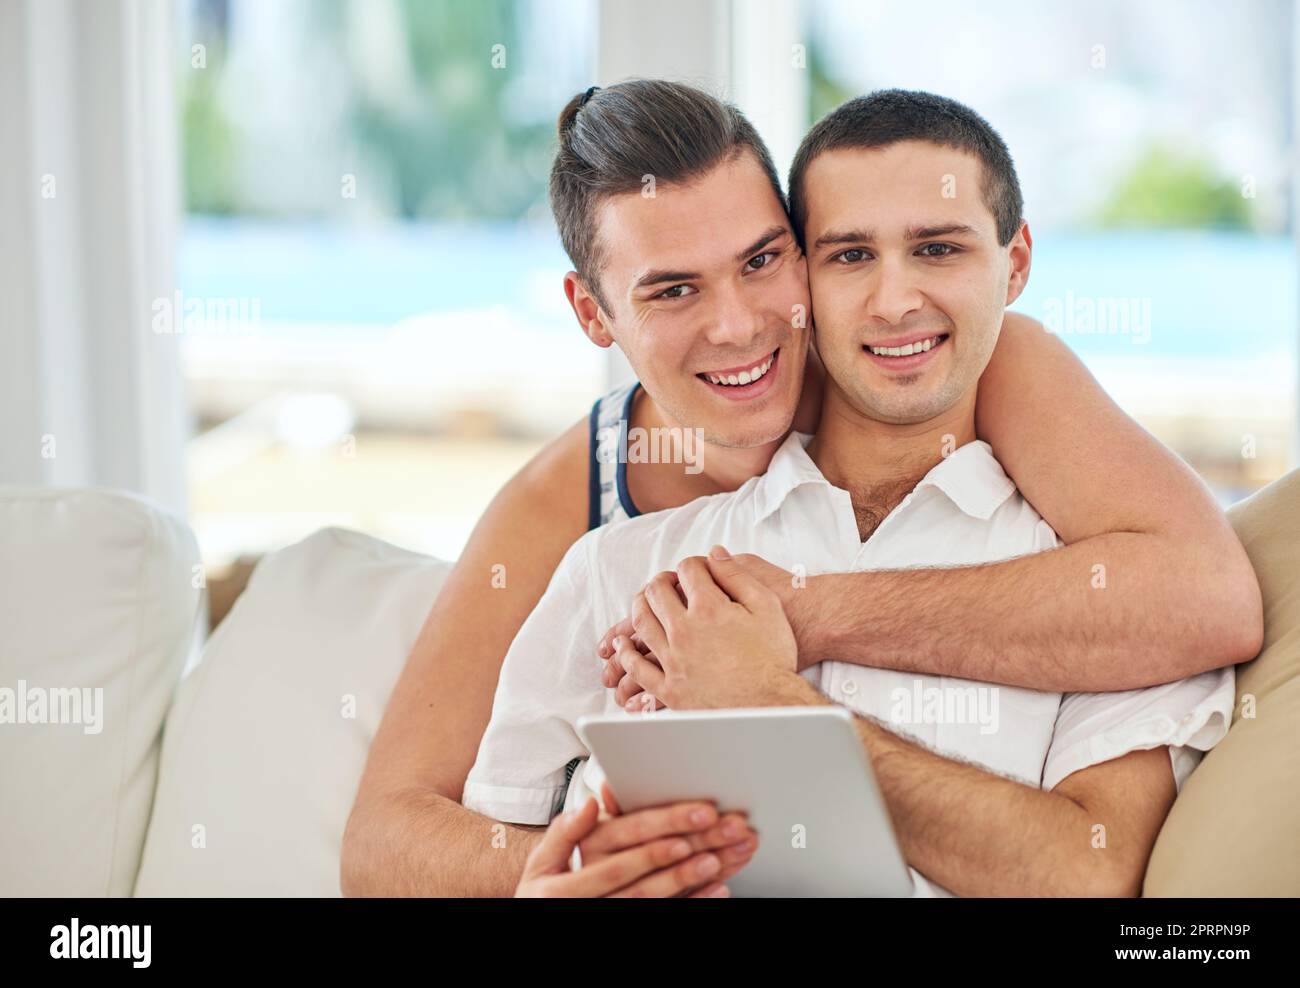 Tous les sourires et l'amour. Portrait d'un couple gay affectueux utilisant une tablette numérique tout en se relaxant sur le canapé à la maison Banque D'Images